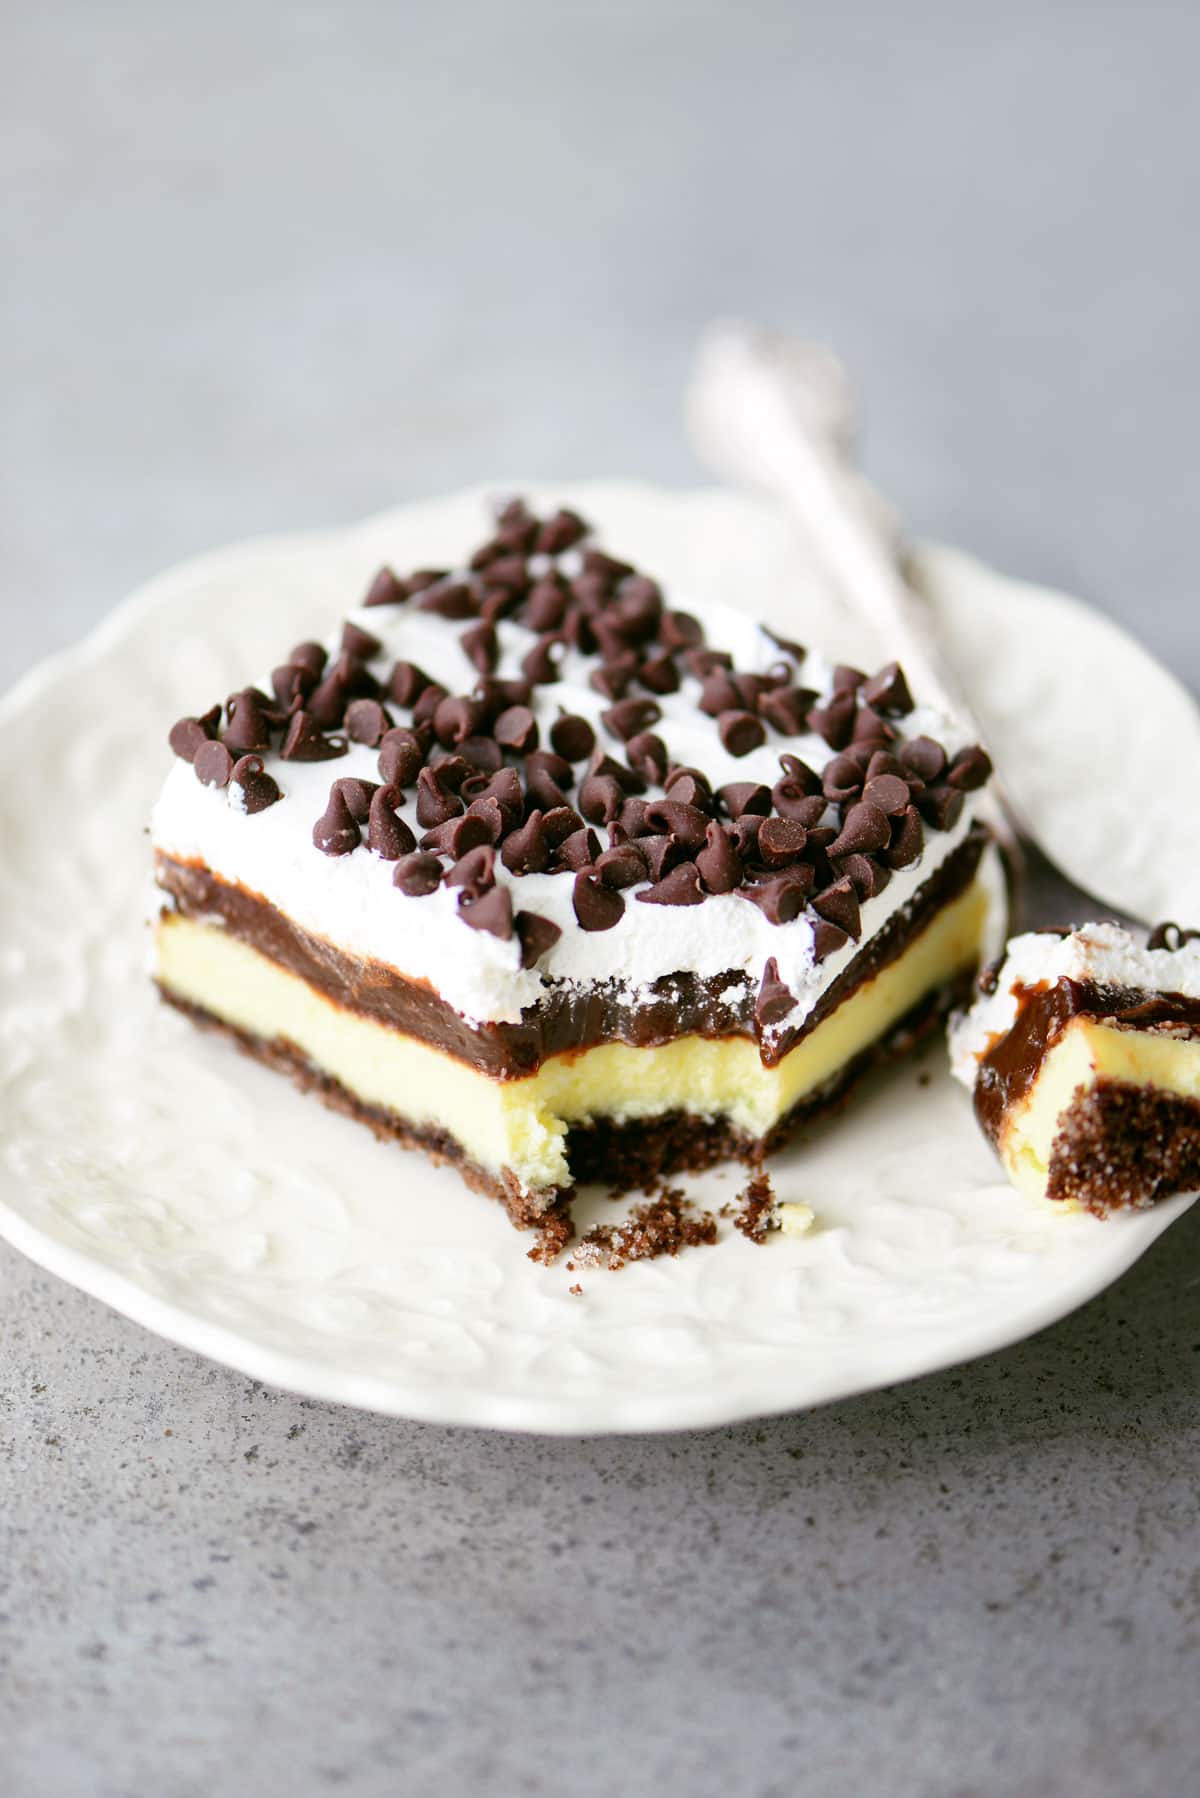 Chocolate Cheesecake Dessert Recipe - The Gunny Sack